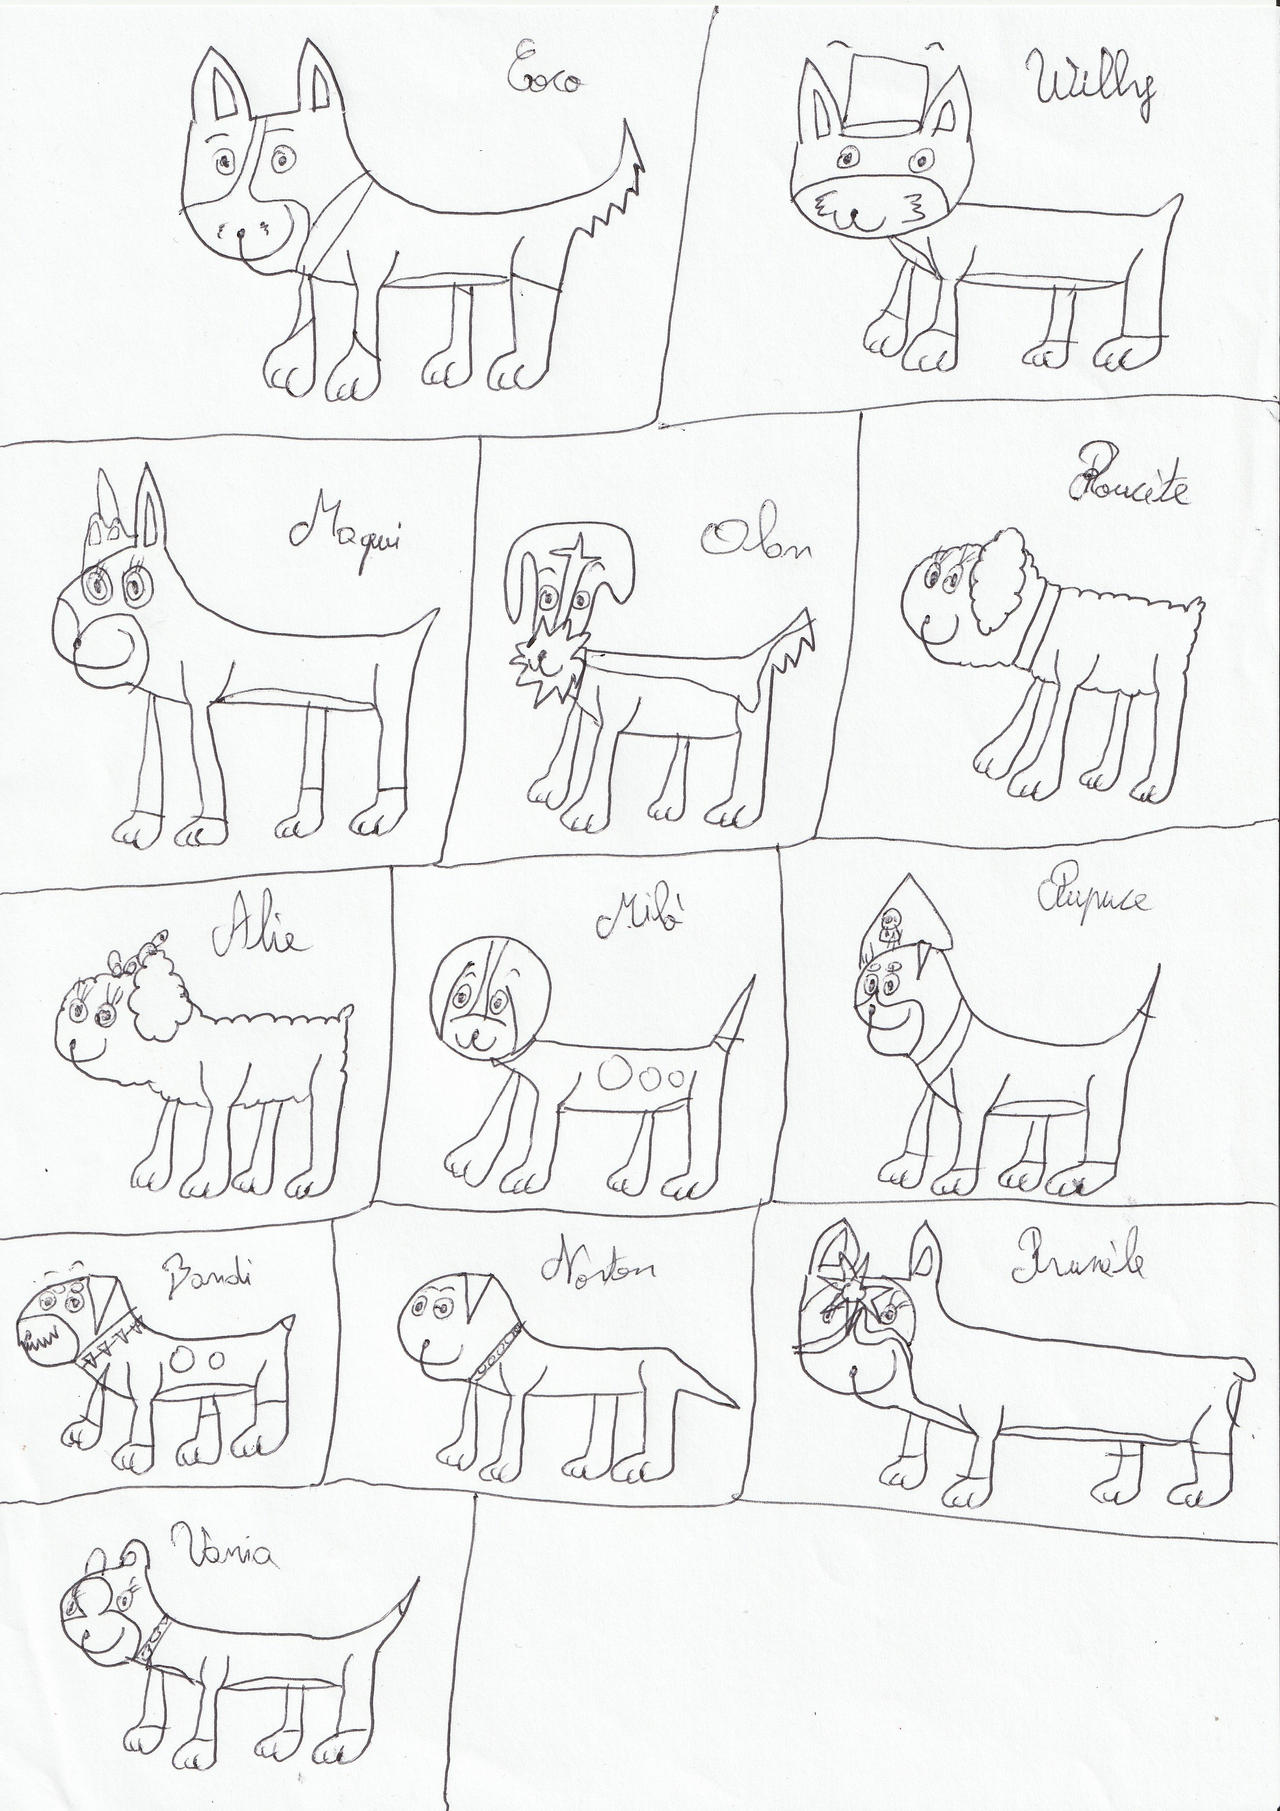 Une petite galerie ? - Page 6 Old_drawings_of_some_dogs_characters_by_eevee33_dej6qxy-fullview.jpg?token=eyJ0eXAiOiJKV1QiLCJhbGciOiJIUzI1NiJ9.eyJzdWIiOiJ1cm46YXBwOjdlMGQxODg5ODIyNjQzNzNhNWYwZDQxNWVhMGQyNmUwIiwiaXNzIjoidXJuOmFwcDo3ZTBkMTg4OTgyMjY0MzczYTVmMGQ0MTVlYTBkMjZlMCIsIm9iaiI6W1t7ImhlaWdodCI6Ijw9MTgxMSIsInBhdGgiOiJcL2ZcLzYyZjQ5MmJiLWM1ODEtNGY5MC1iMWJhLTIxMWRmNjNhOGIwYlwvZGVqNnF4eS0zM2MzNGY1ZC1jYTcwLTRkYjgtYTVhMC00YjgxYmIzZTY2ZDcuanBnIiwid2lkdGgiOiI8PTEyODAifV1dLCJhdWQiOlsidXJuOnNlcnZpY2U6aW1hZ2Uub3BlcmF0aW9ucyJdfQ